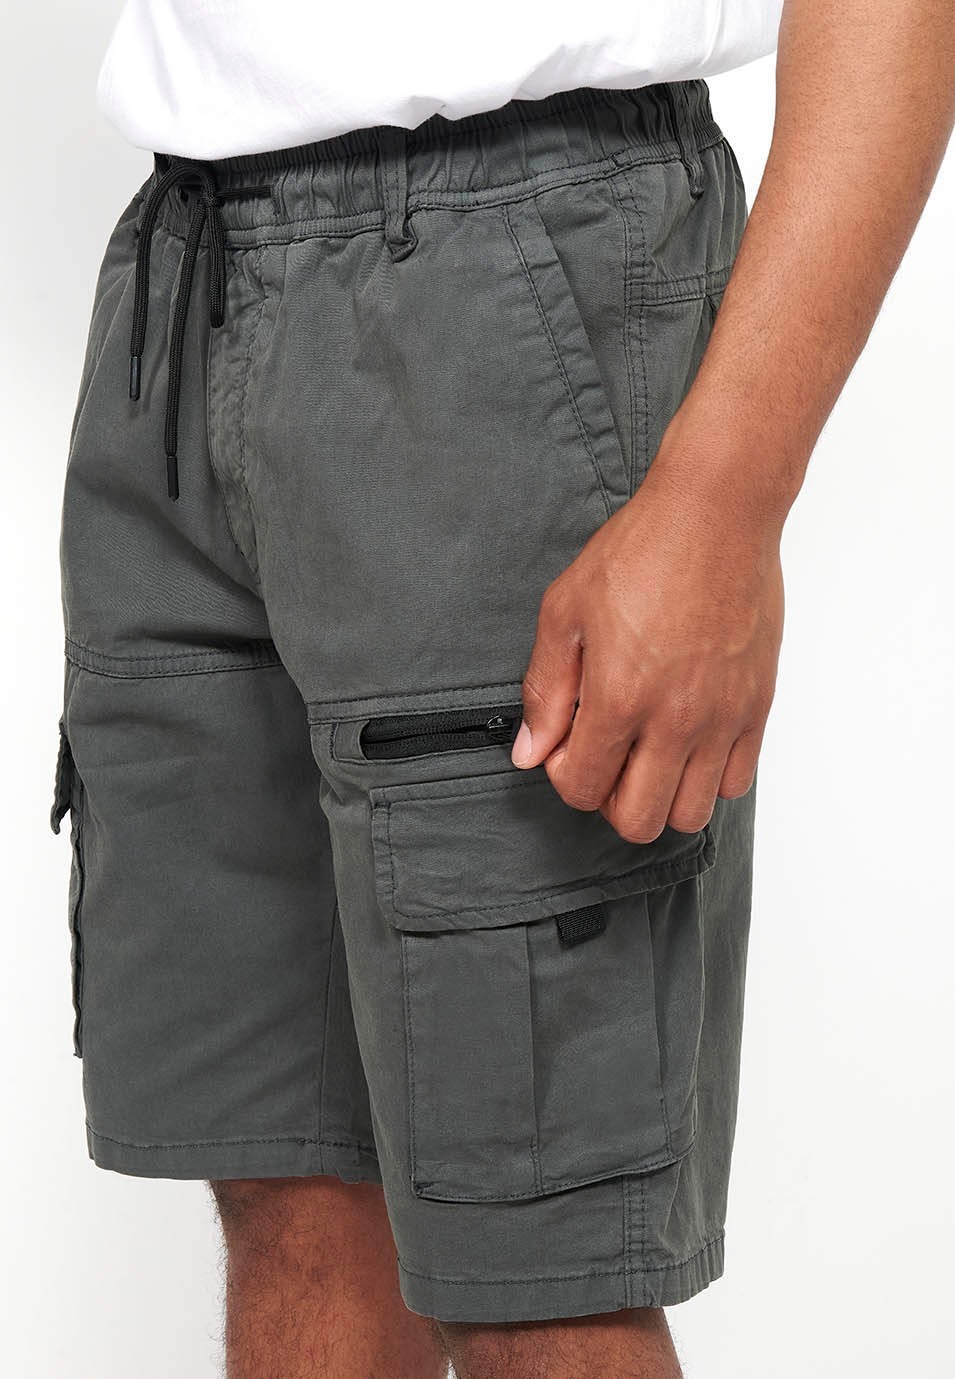 Pantalons curts càrrec amb Butxaques laterals amb solapa i Tancament davanter amb cremallera i botó Color Gris per a Home 6